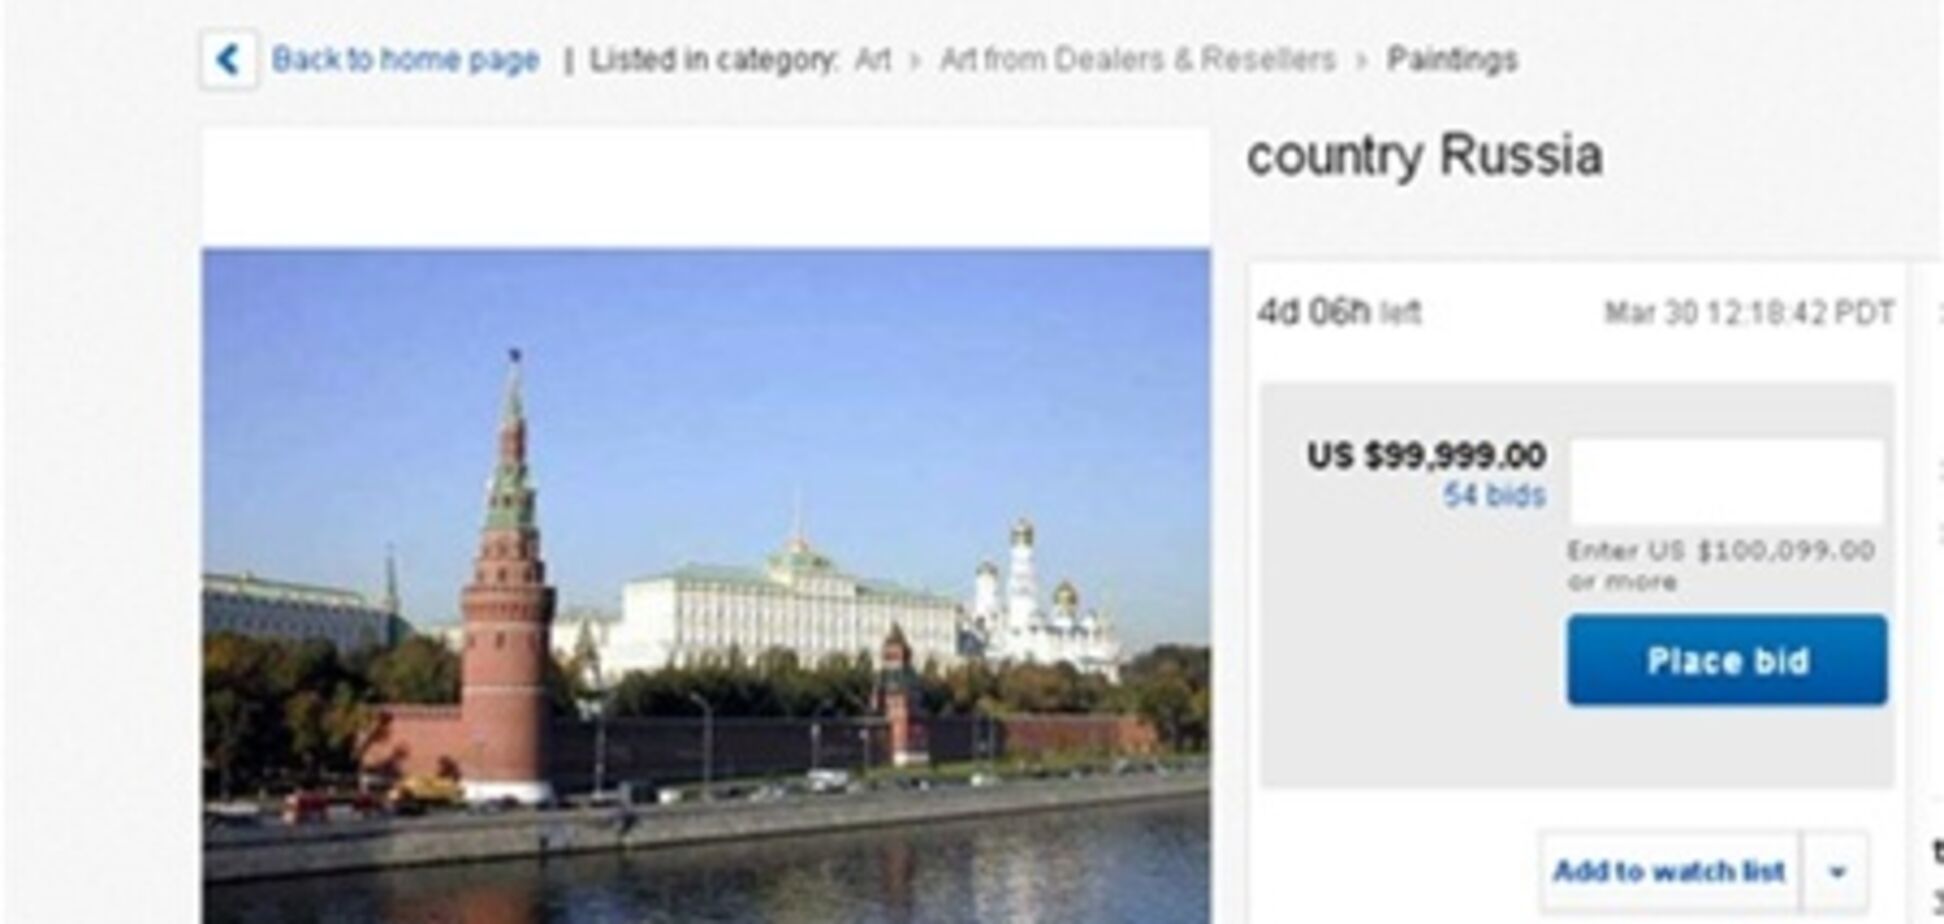 Після повідомлення в ЗМІ Росію зняли з торгів на eBay